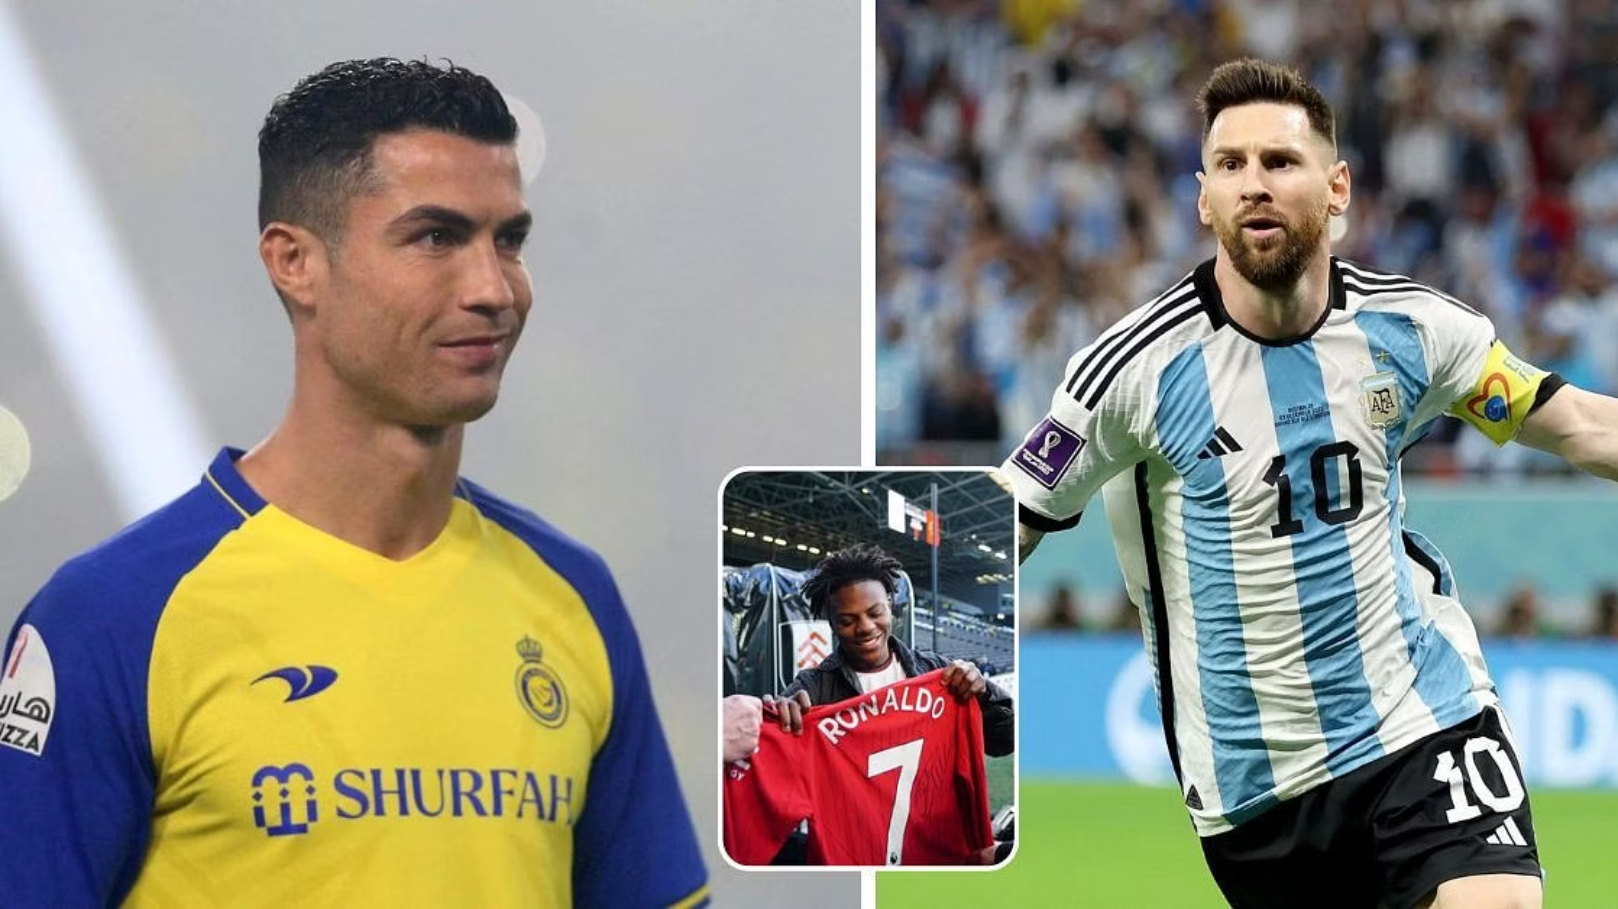 Le YouTuber IShowSpeed dépasse ses idoles Ronaldo et Messi en termes de likes sur son dernier post Instagram.